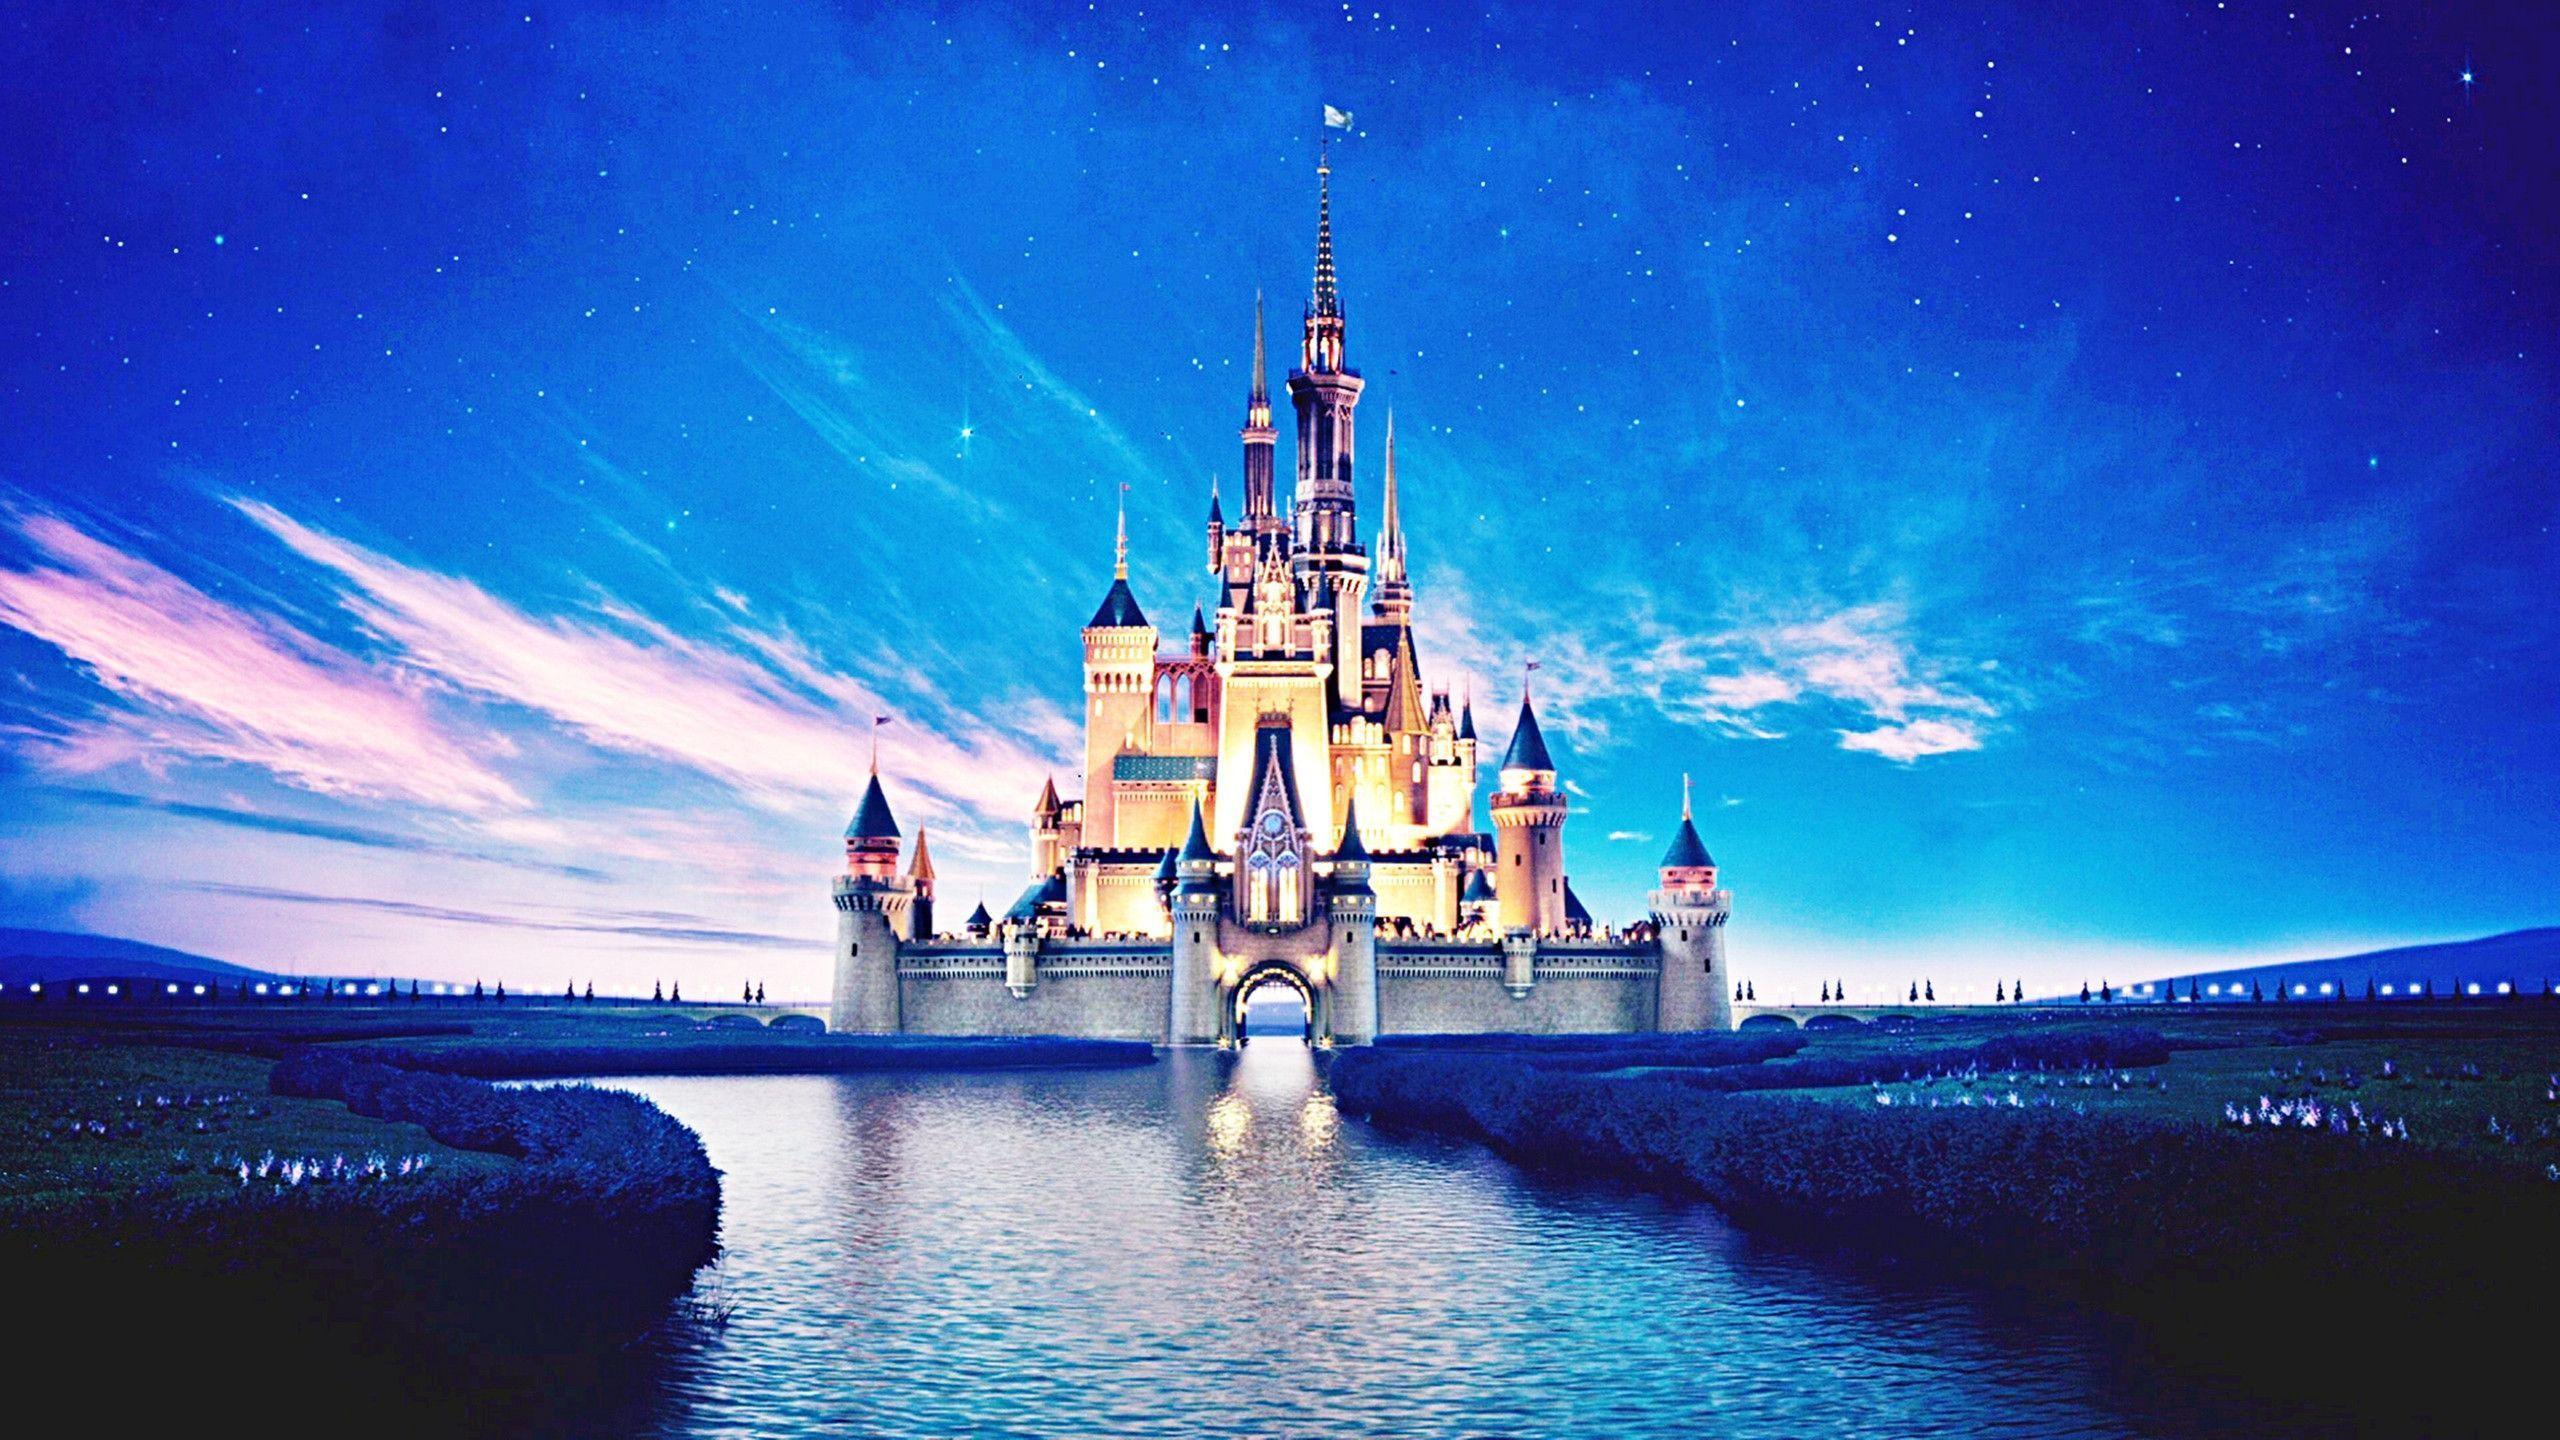 Wallpaper For > Disney Castle Tumblr Background